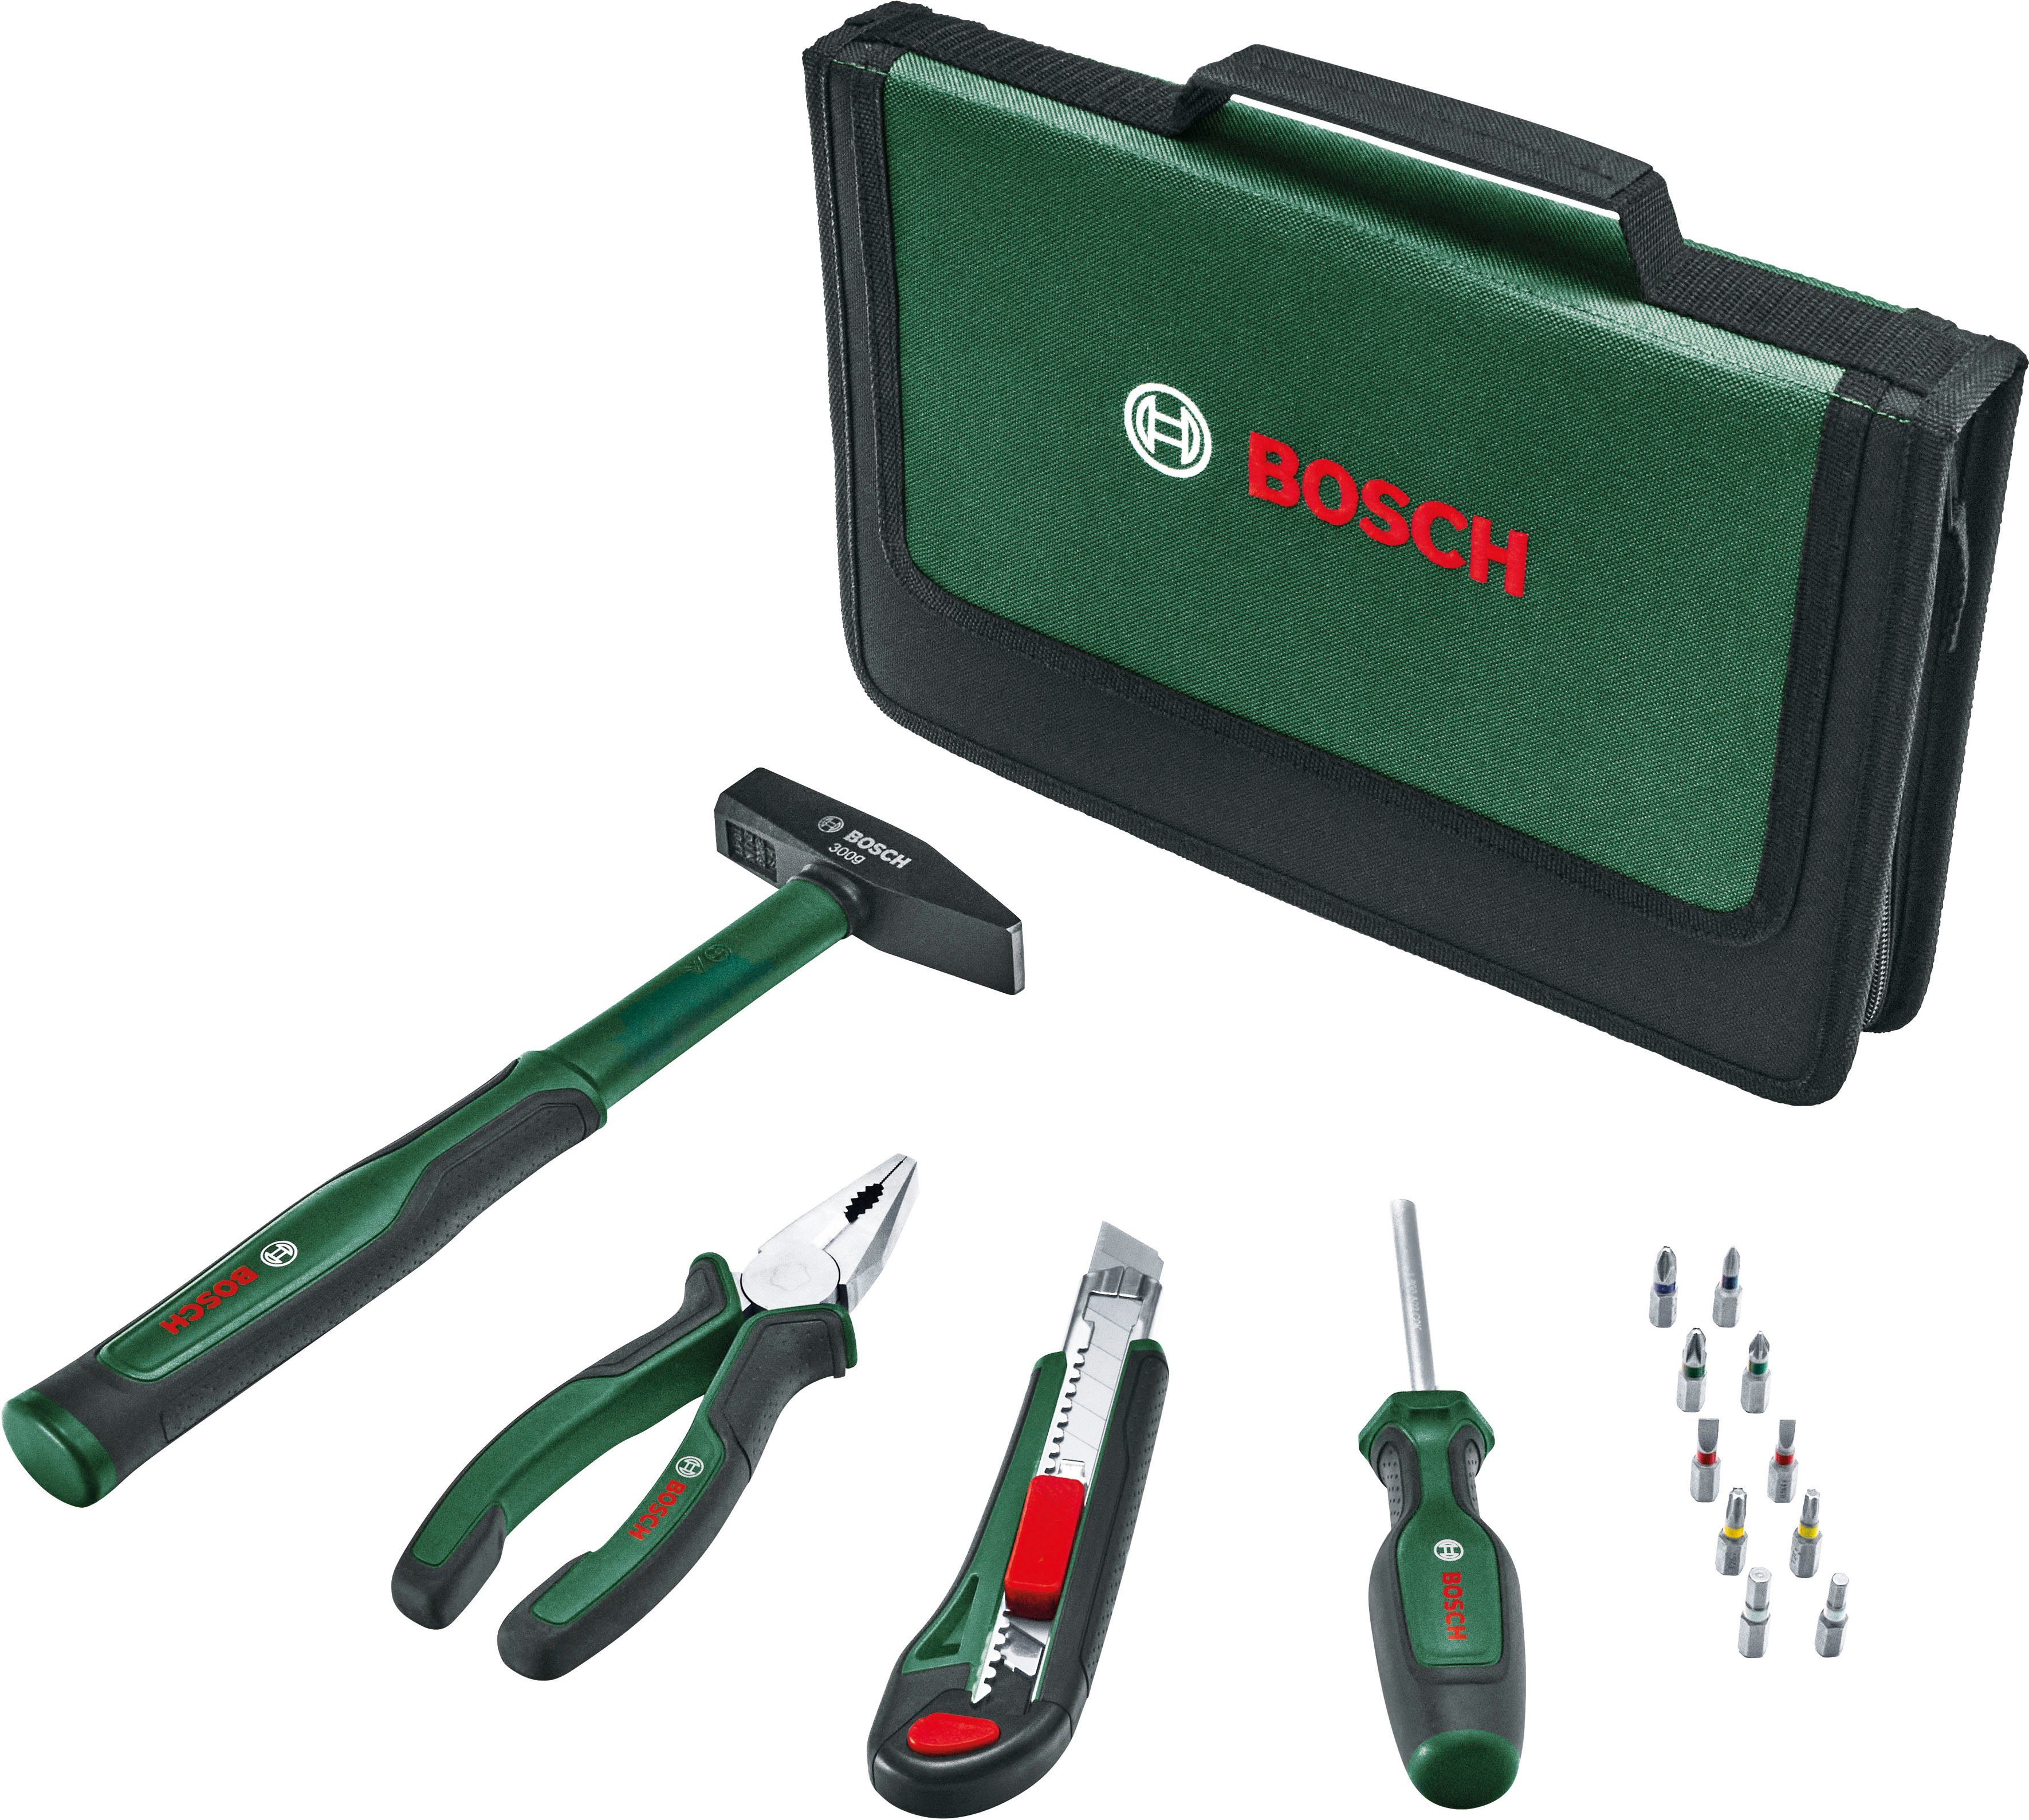 & Home Werkzeug Set, 14-teilig Bosch Easy Starter Garden Werkzeugset